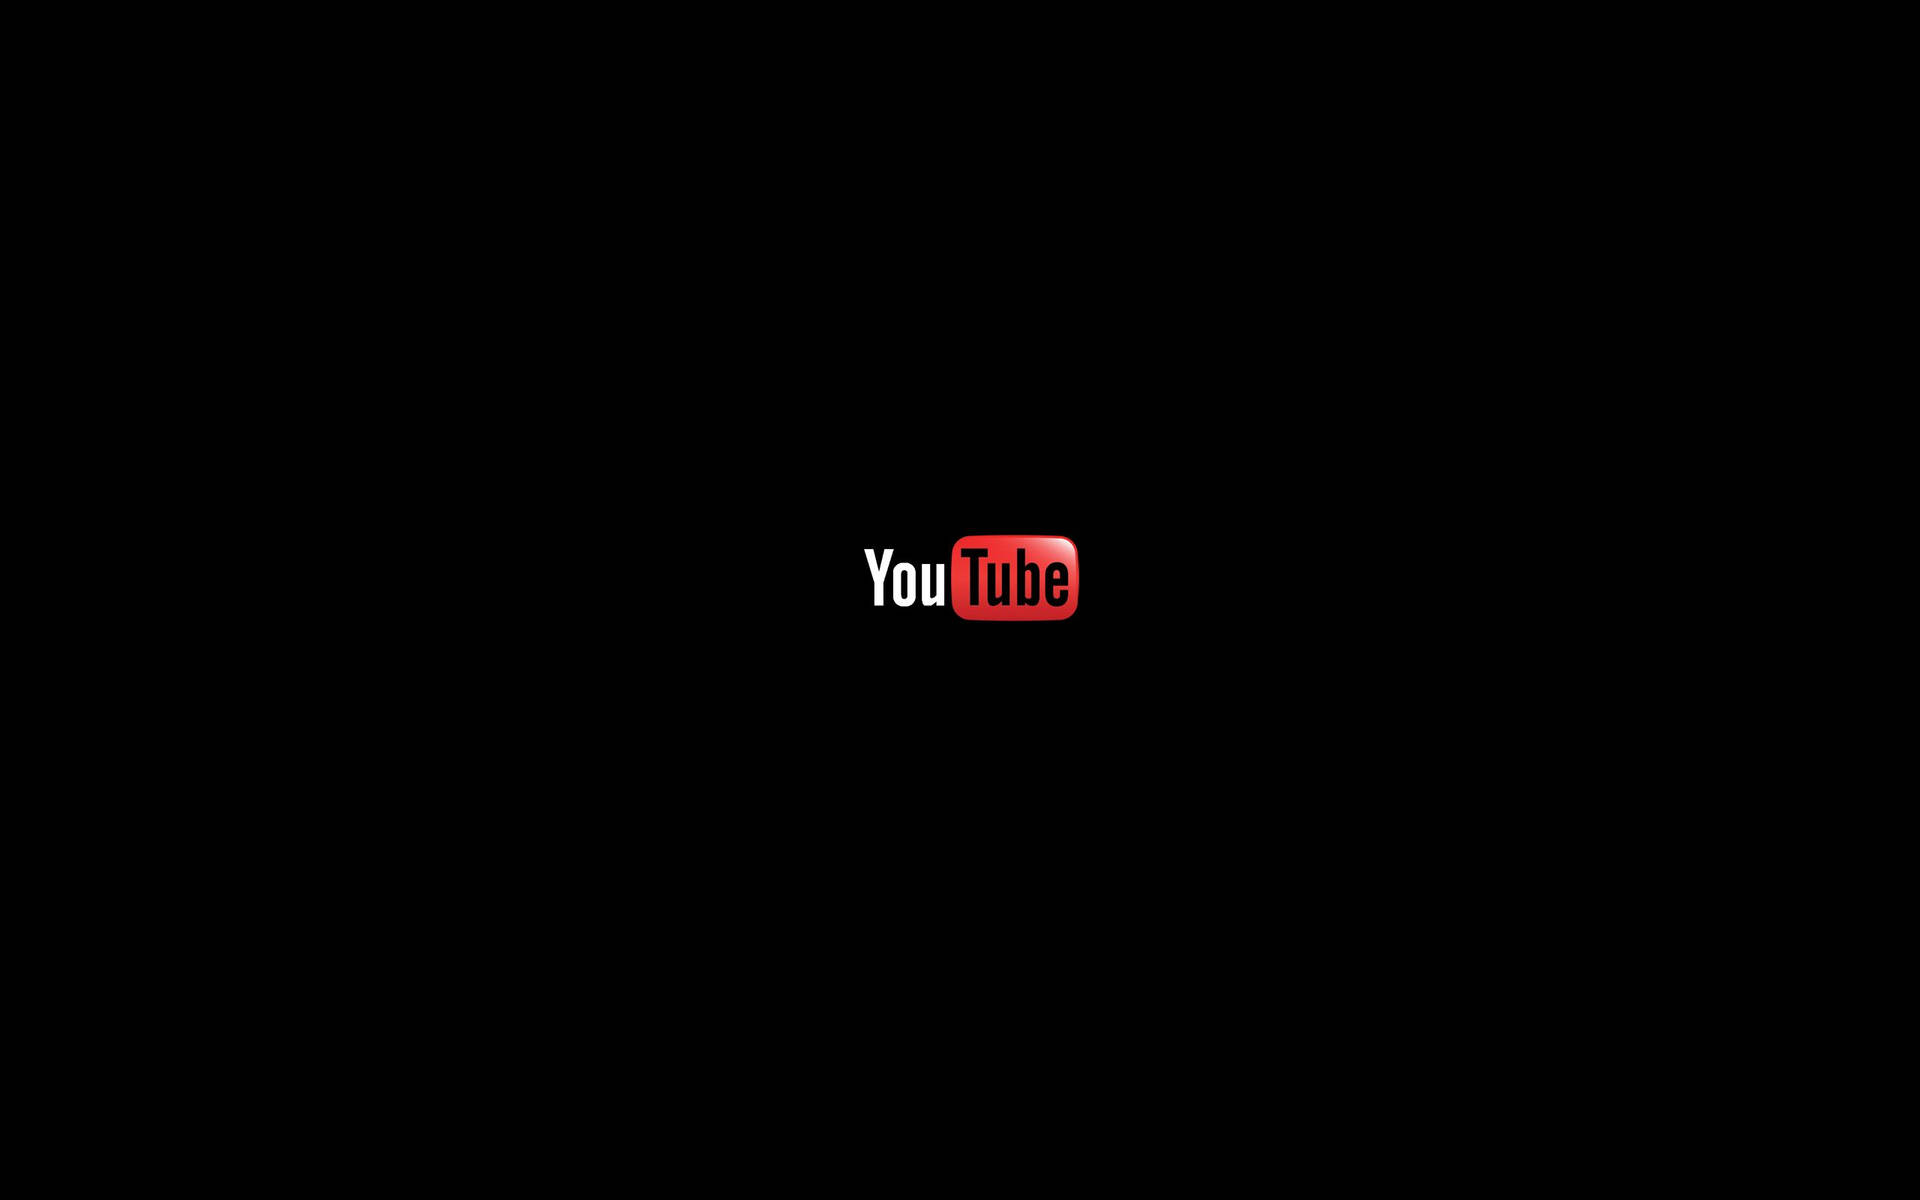 Mini Youtube Logo In Black